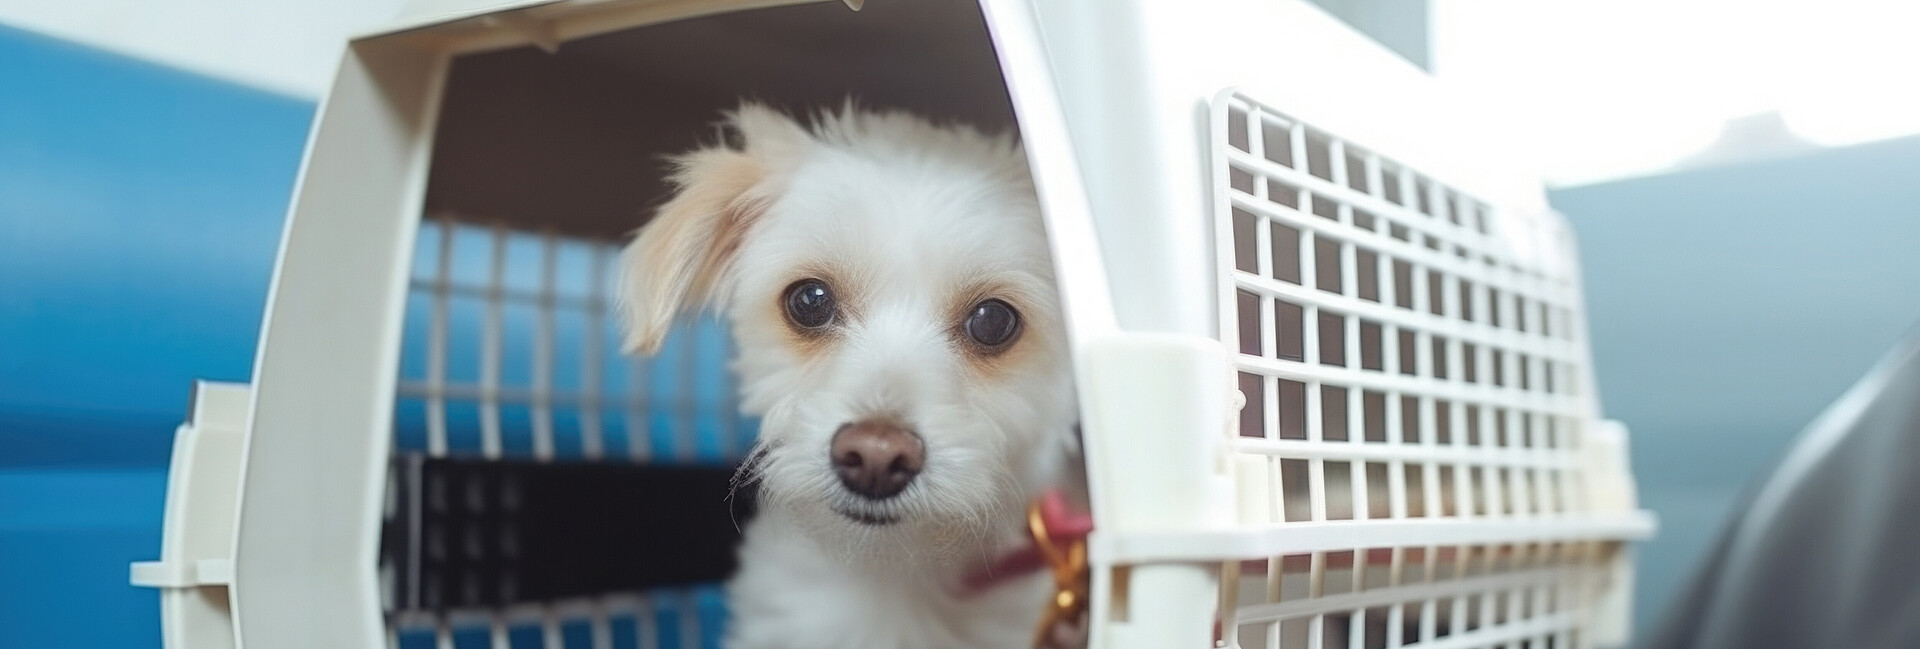 Weißer Hund in Hund in Transportbox